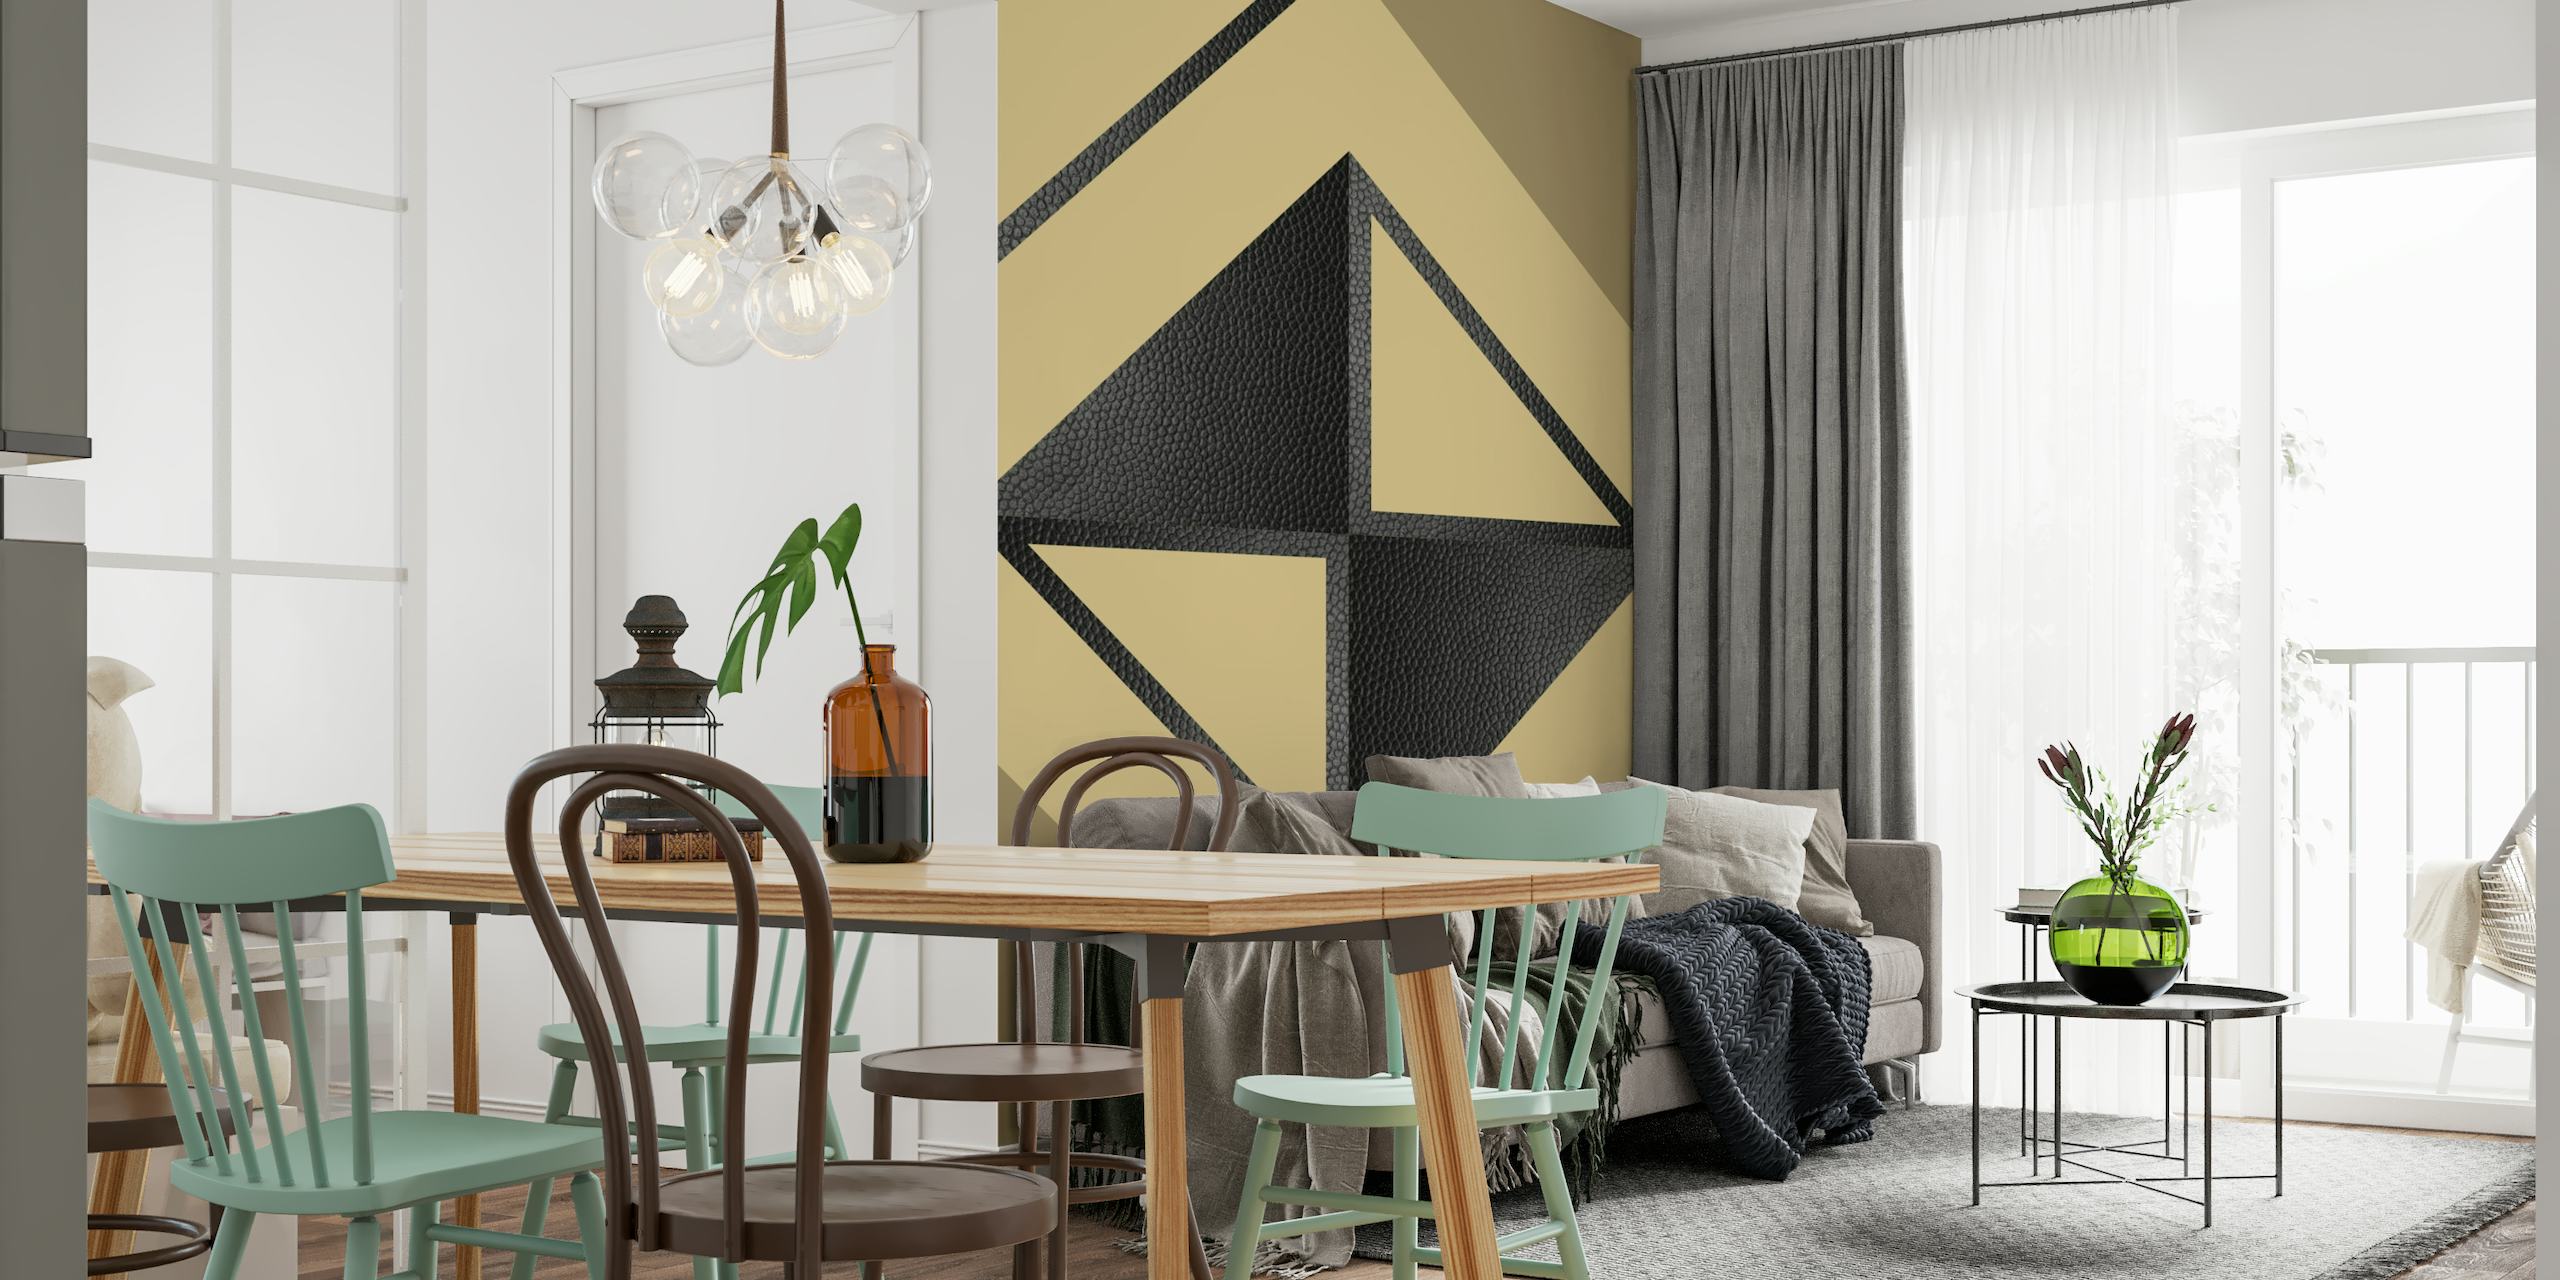 Żółto-czarna abstrakcyjna fototapeta geometryczna przedstawiająca minimalistyczne trójkąty i kształty